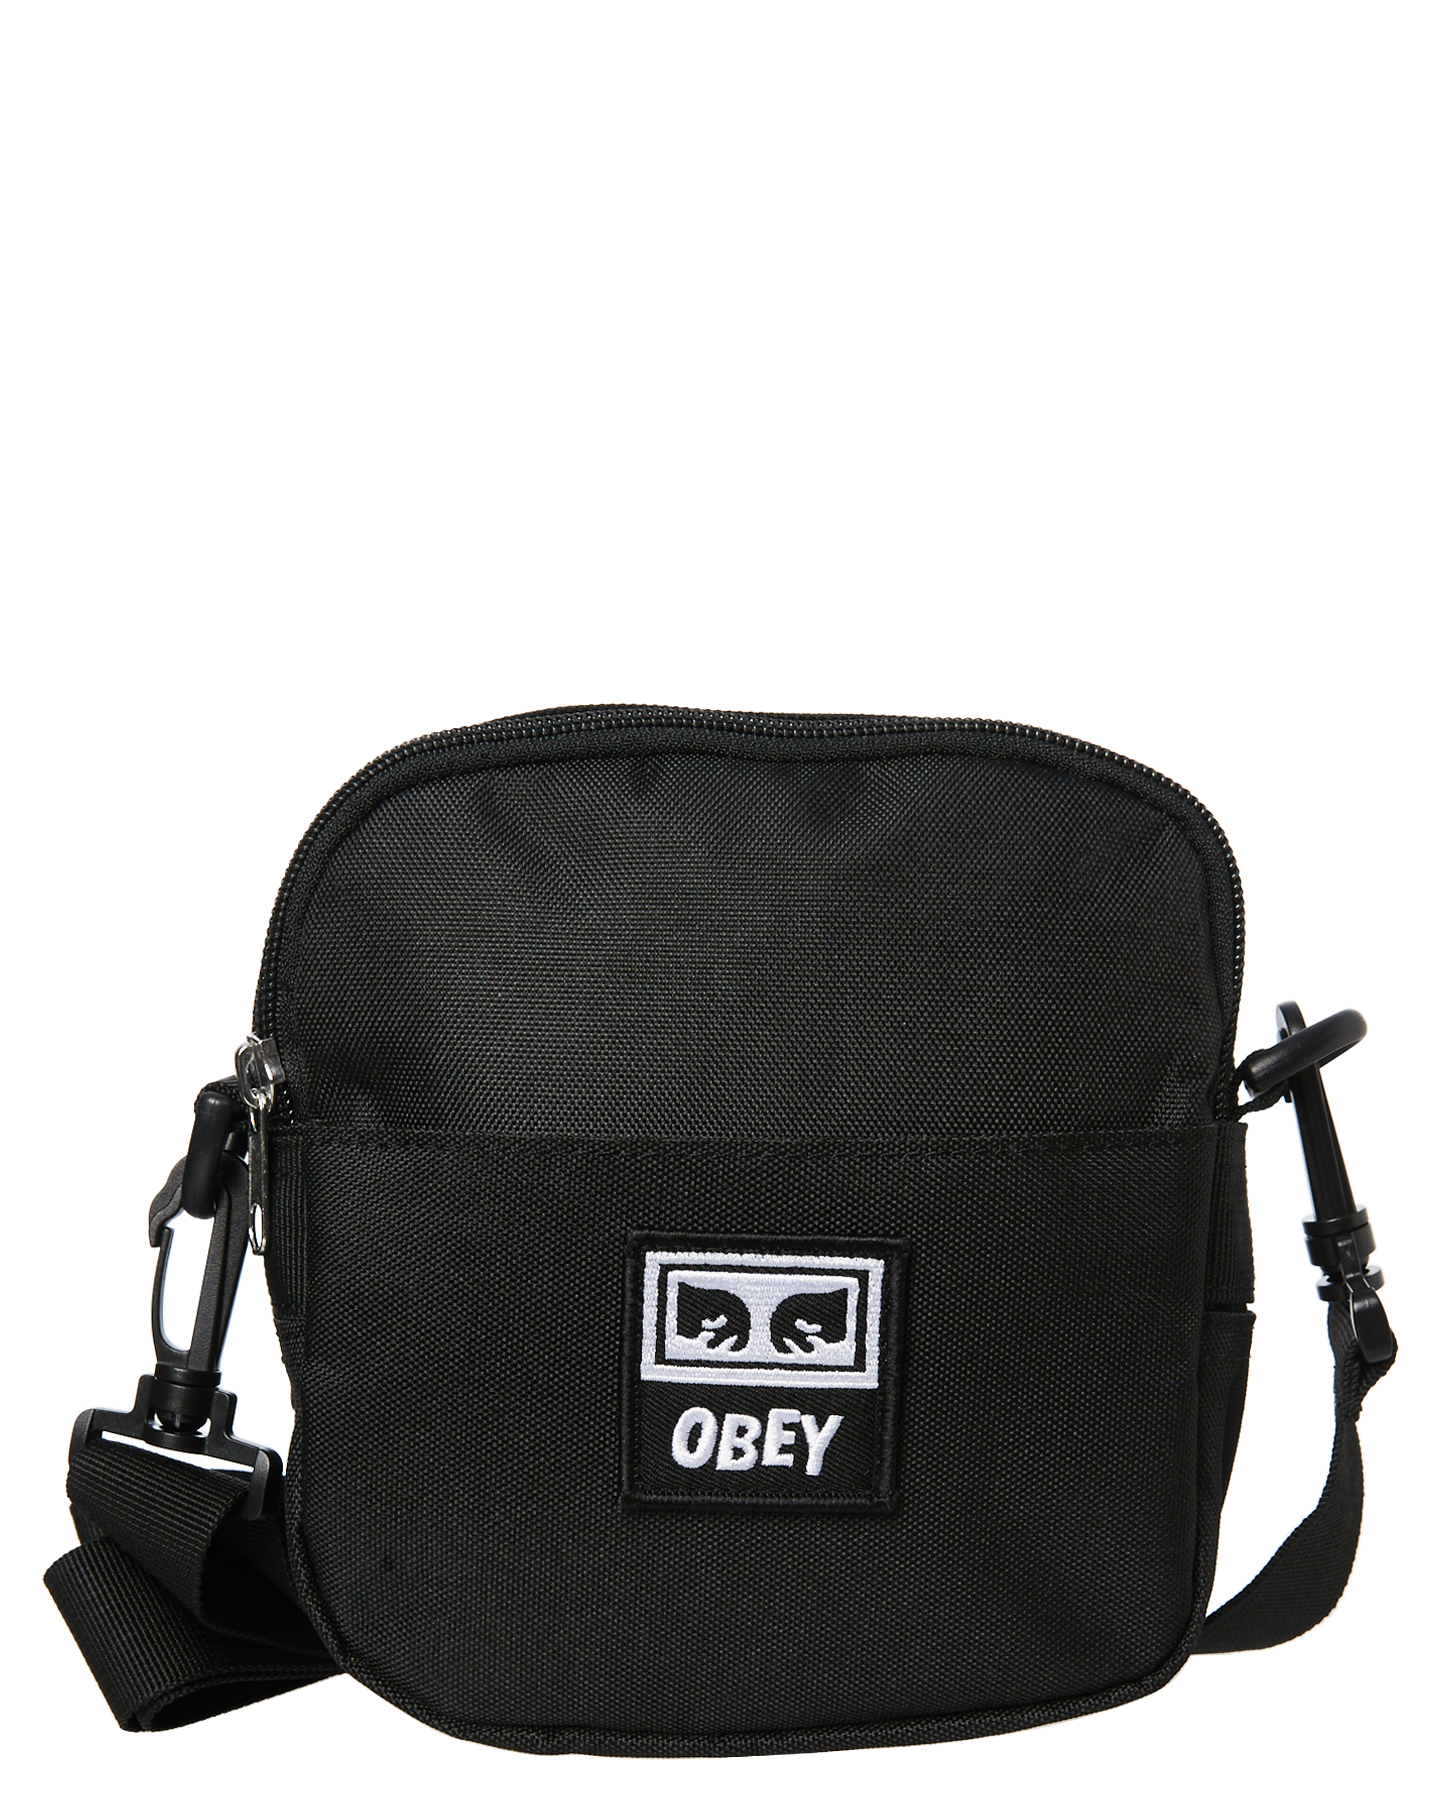 Obey Drop Out Traveler Bag - Black | SurfStitch